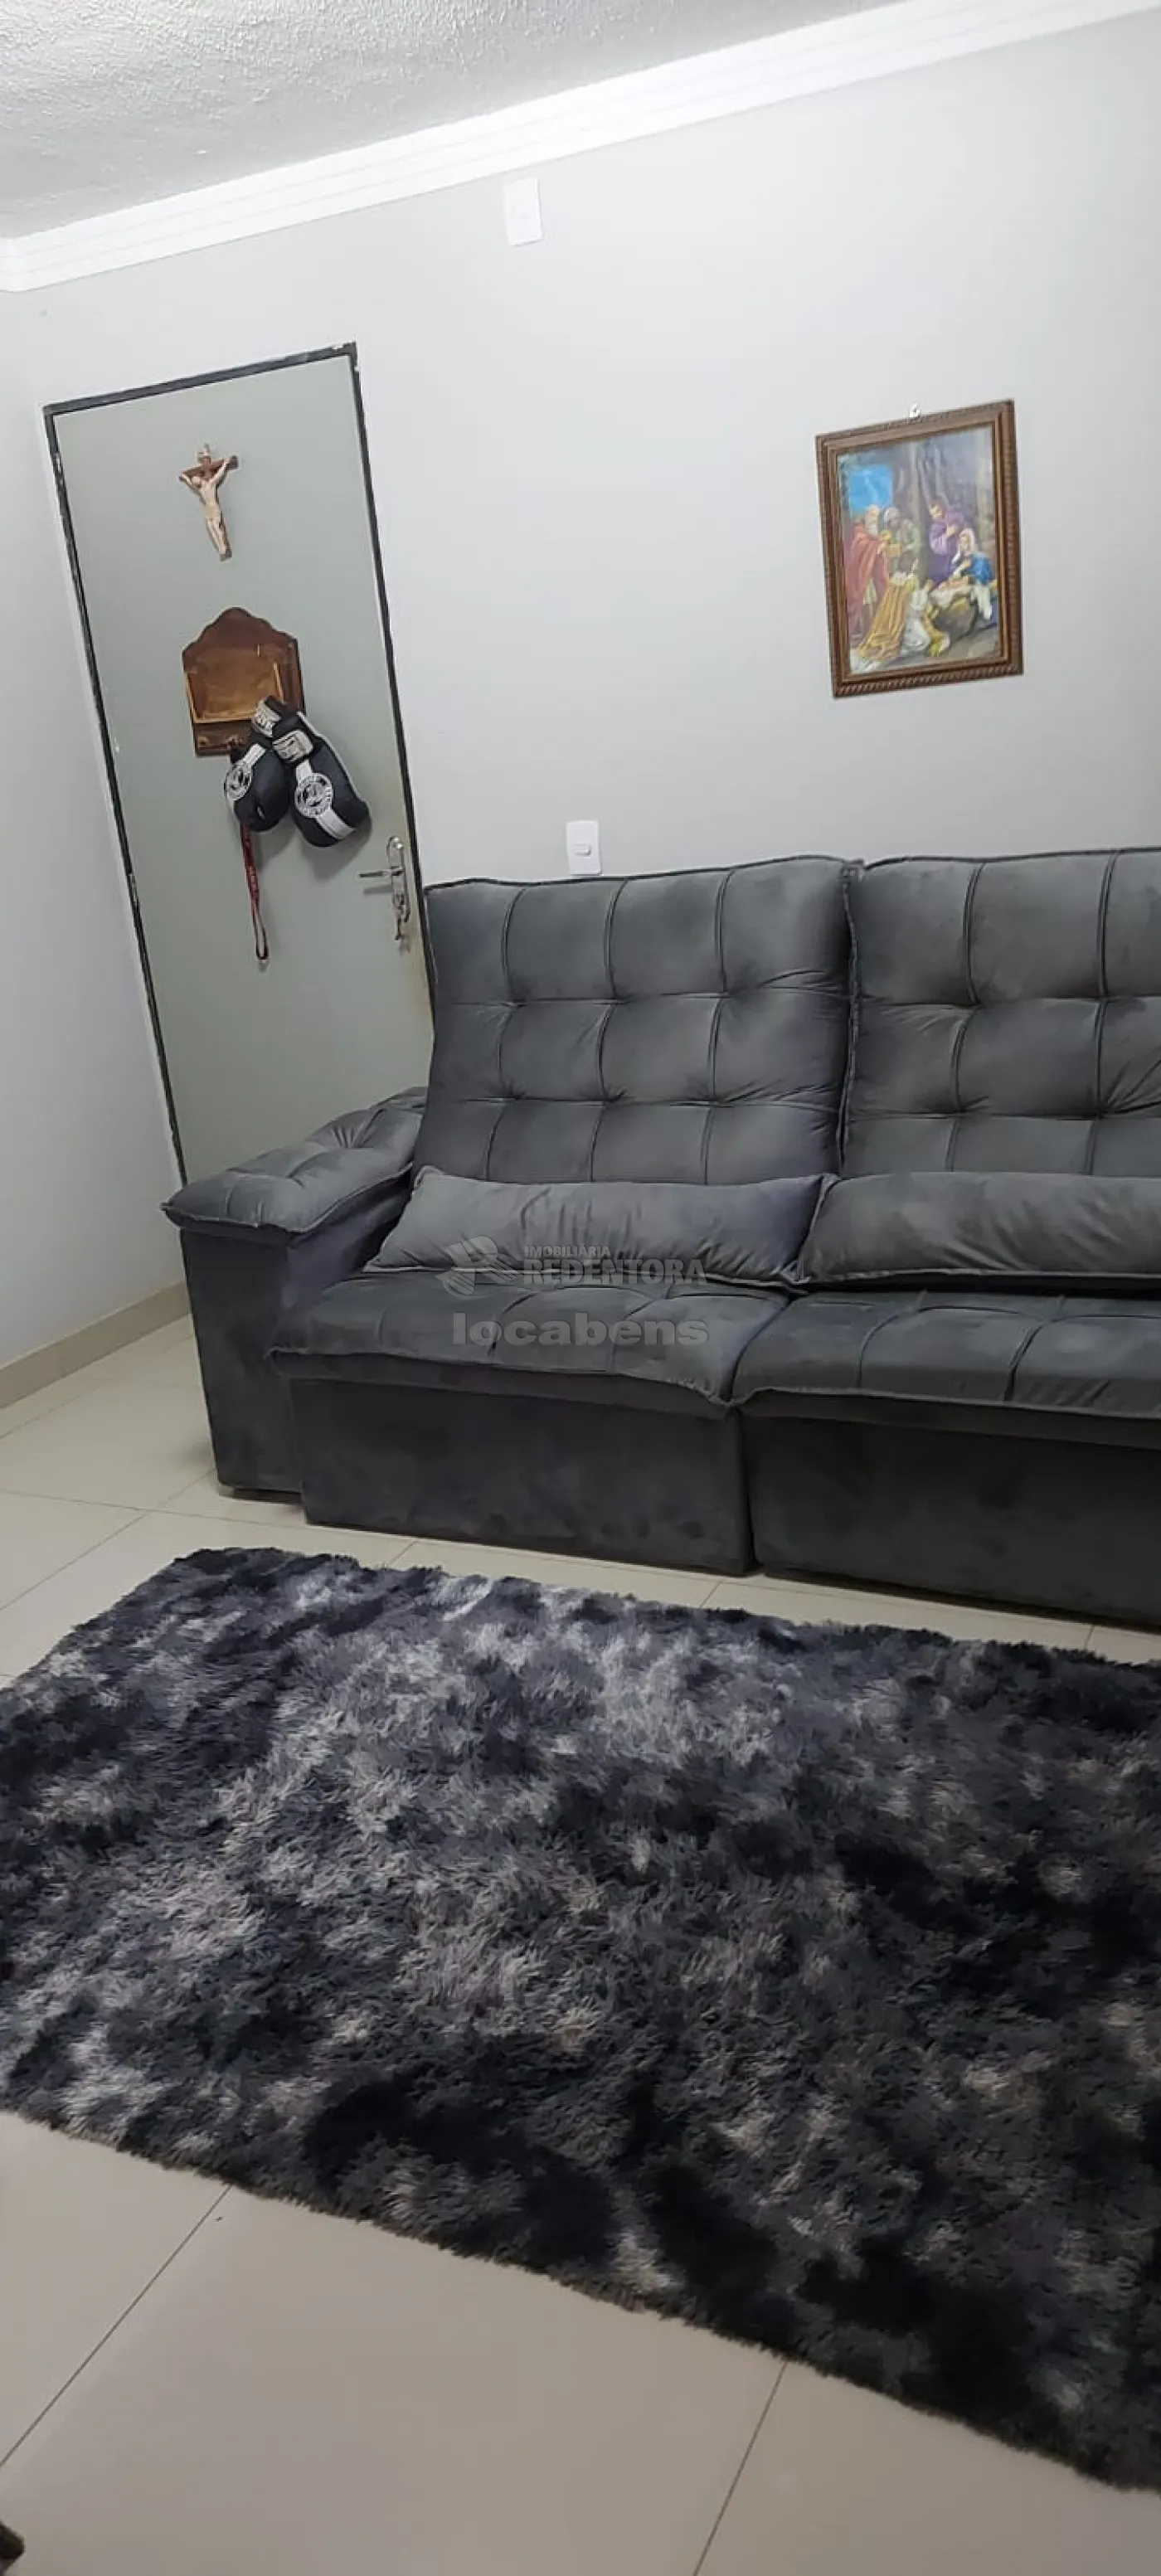 Comprar Apartamento / Padrão em São José do Rio Preto R$ 180.000,00 - Foto 6